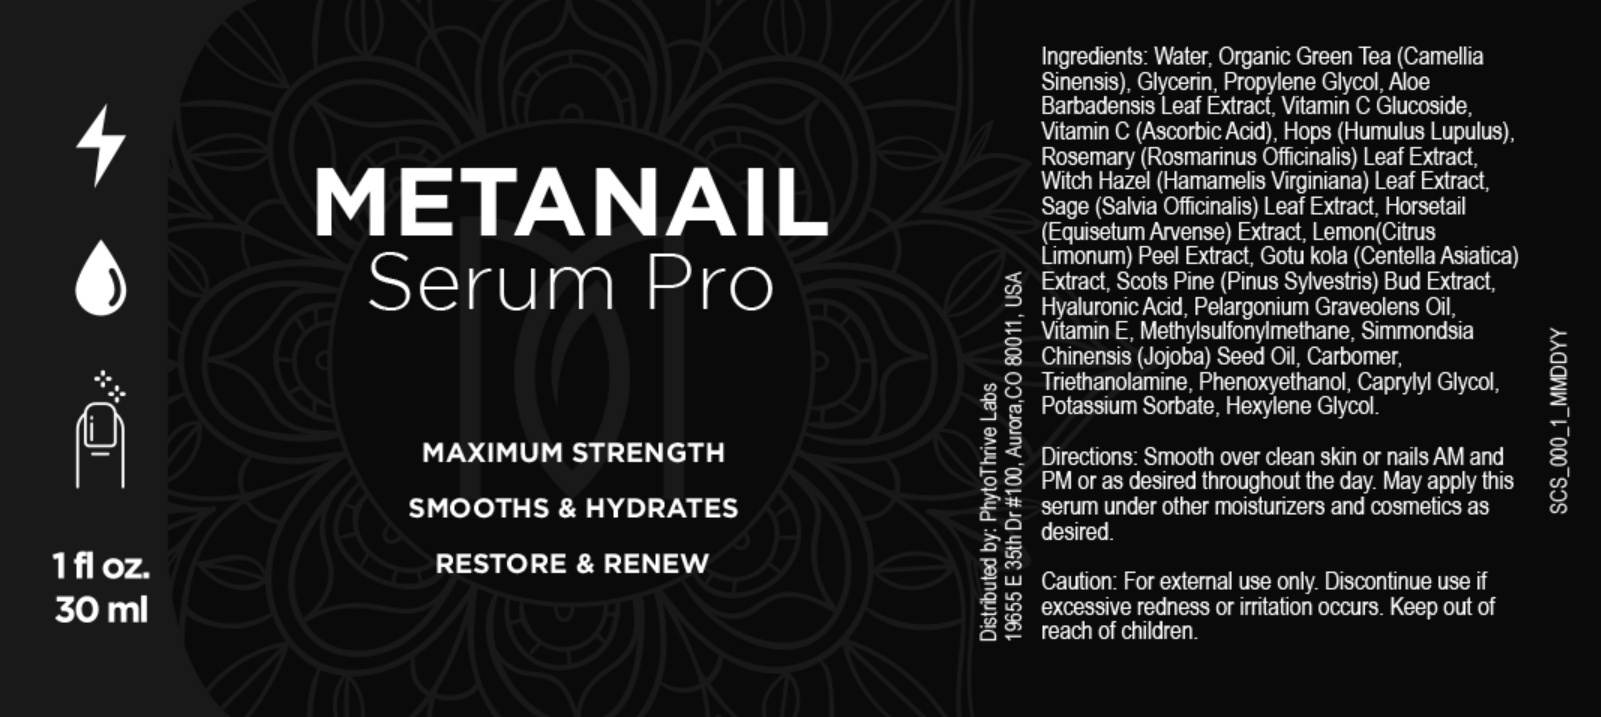 Metanail Serum Pro Ingredients